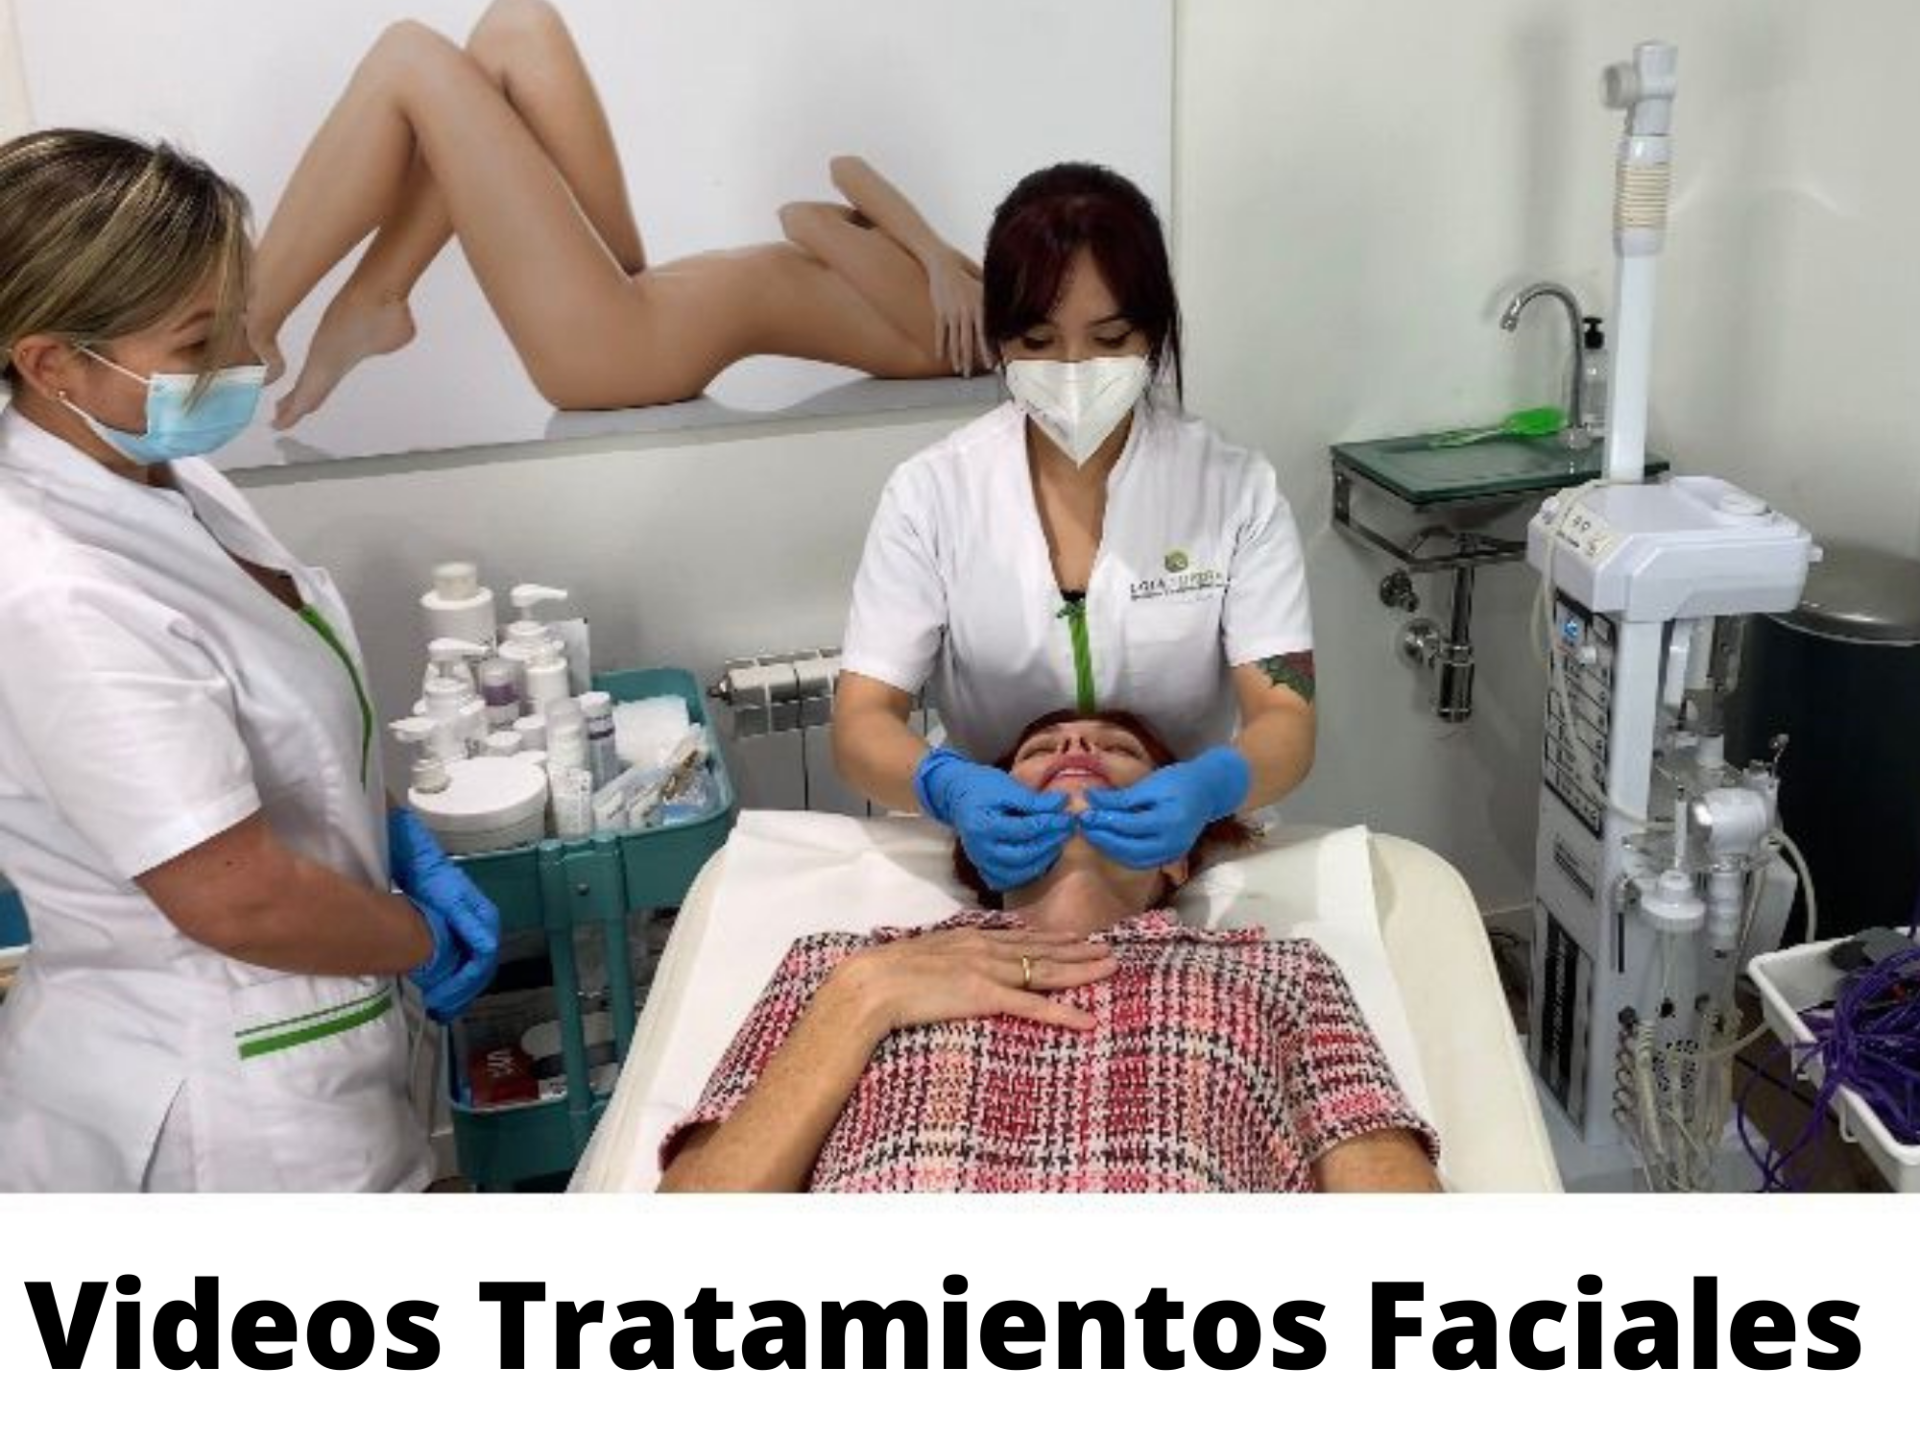 Videos tratamientos esteticos faciales